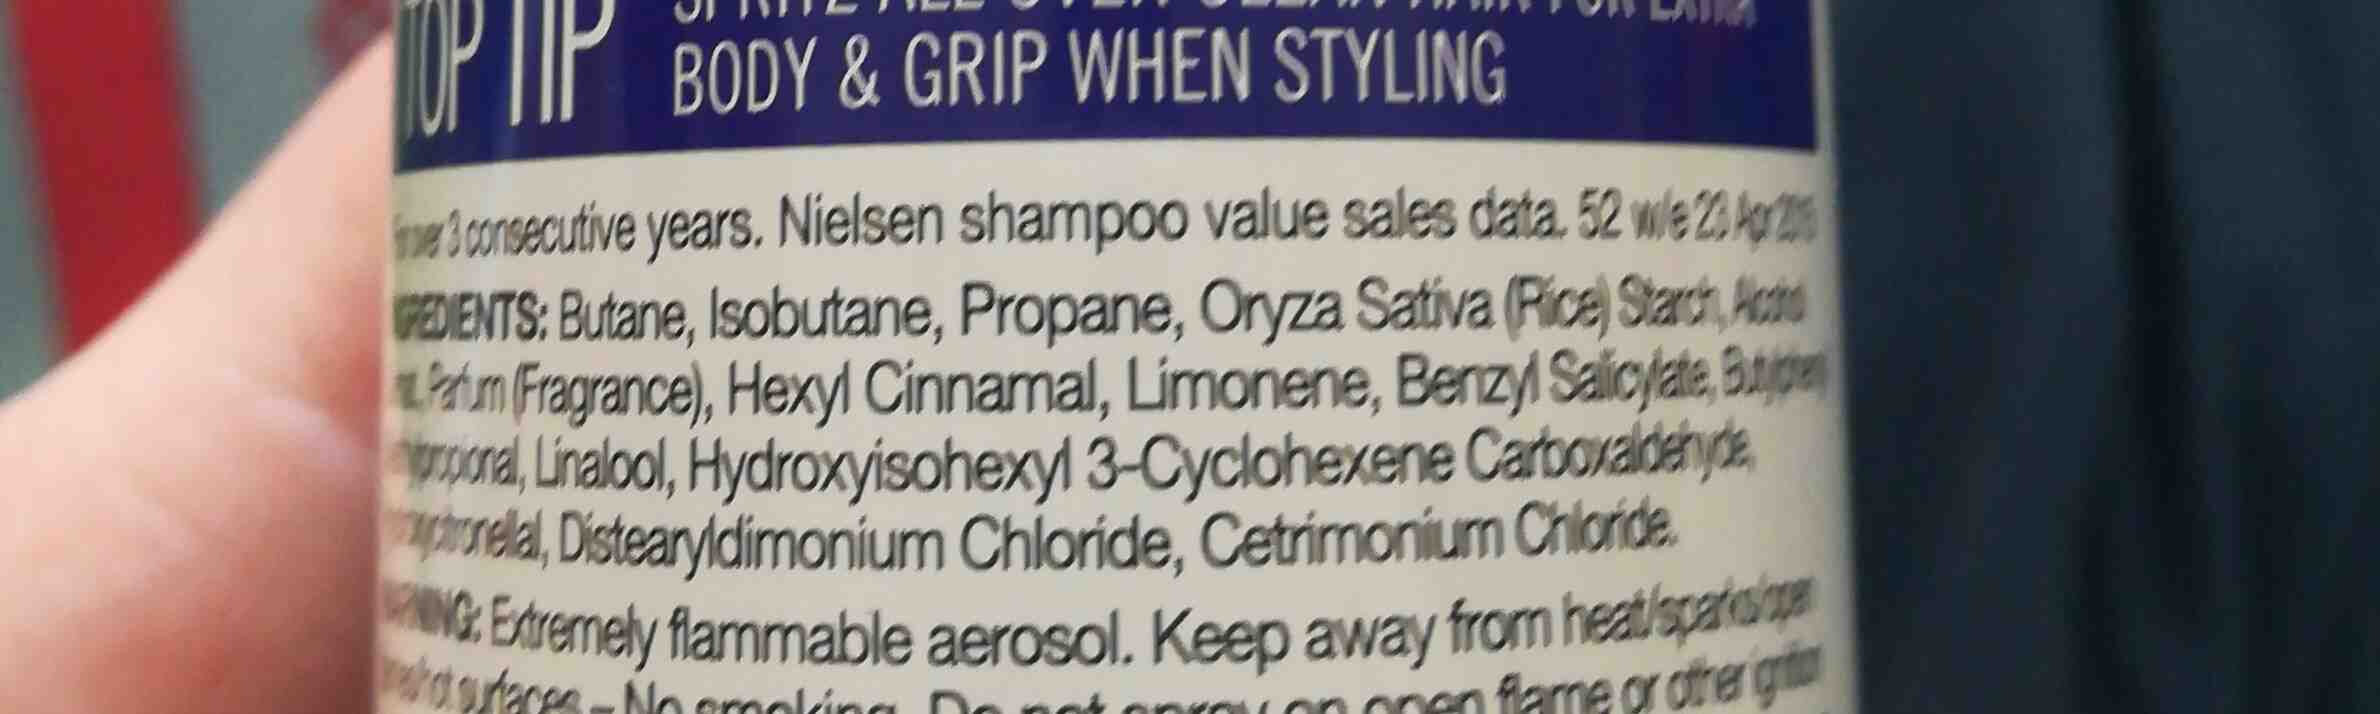 Batiste dry shampoo - Ingredients - en